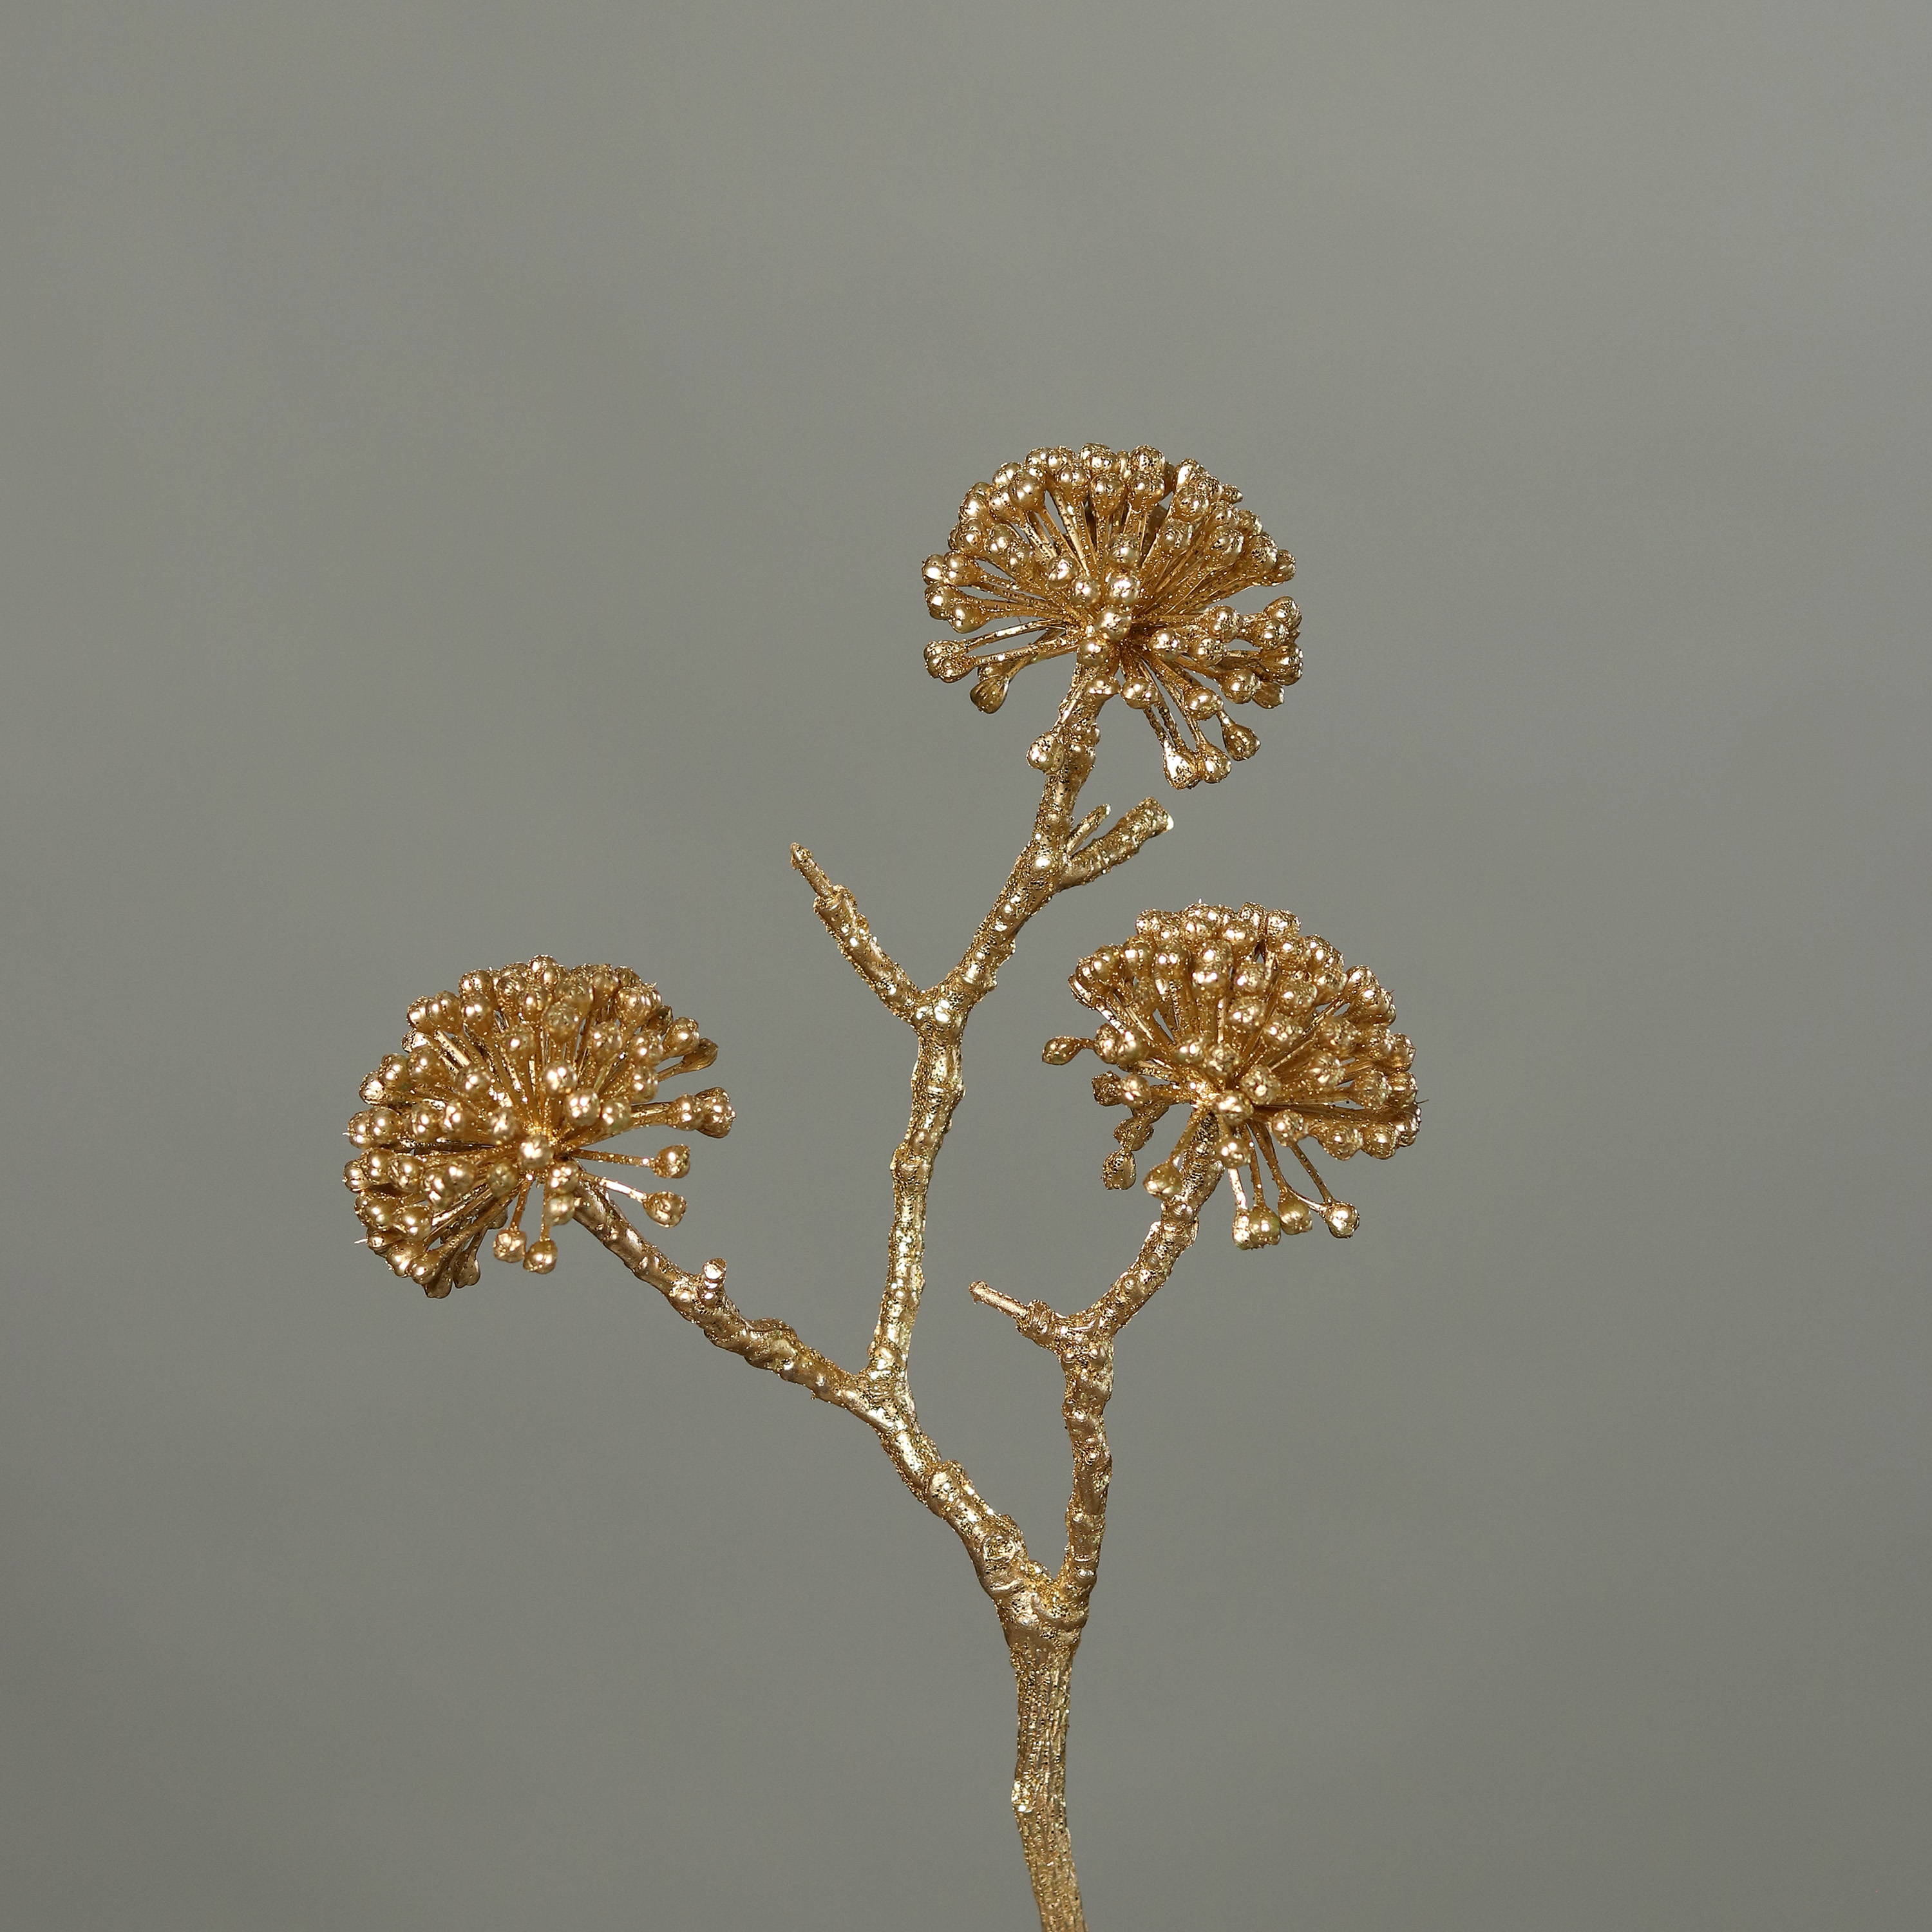 Efeu-Beeren-Fruchtstamm mit Glitzer 26cm gold DP künstlicher Zweig Kunstzweig